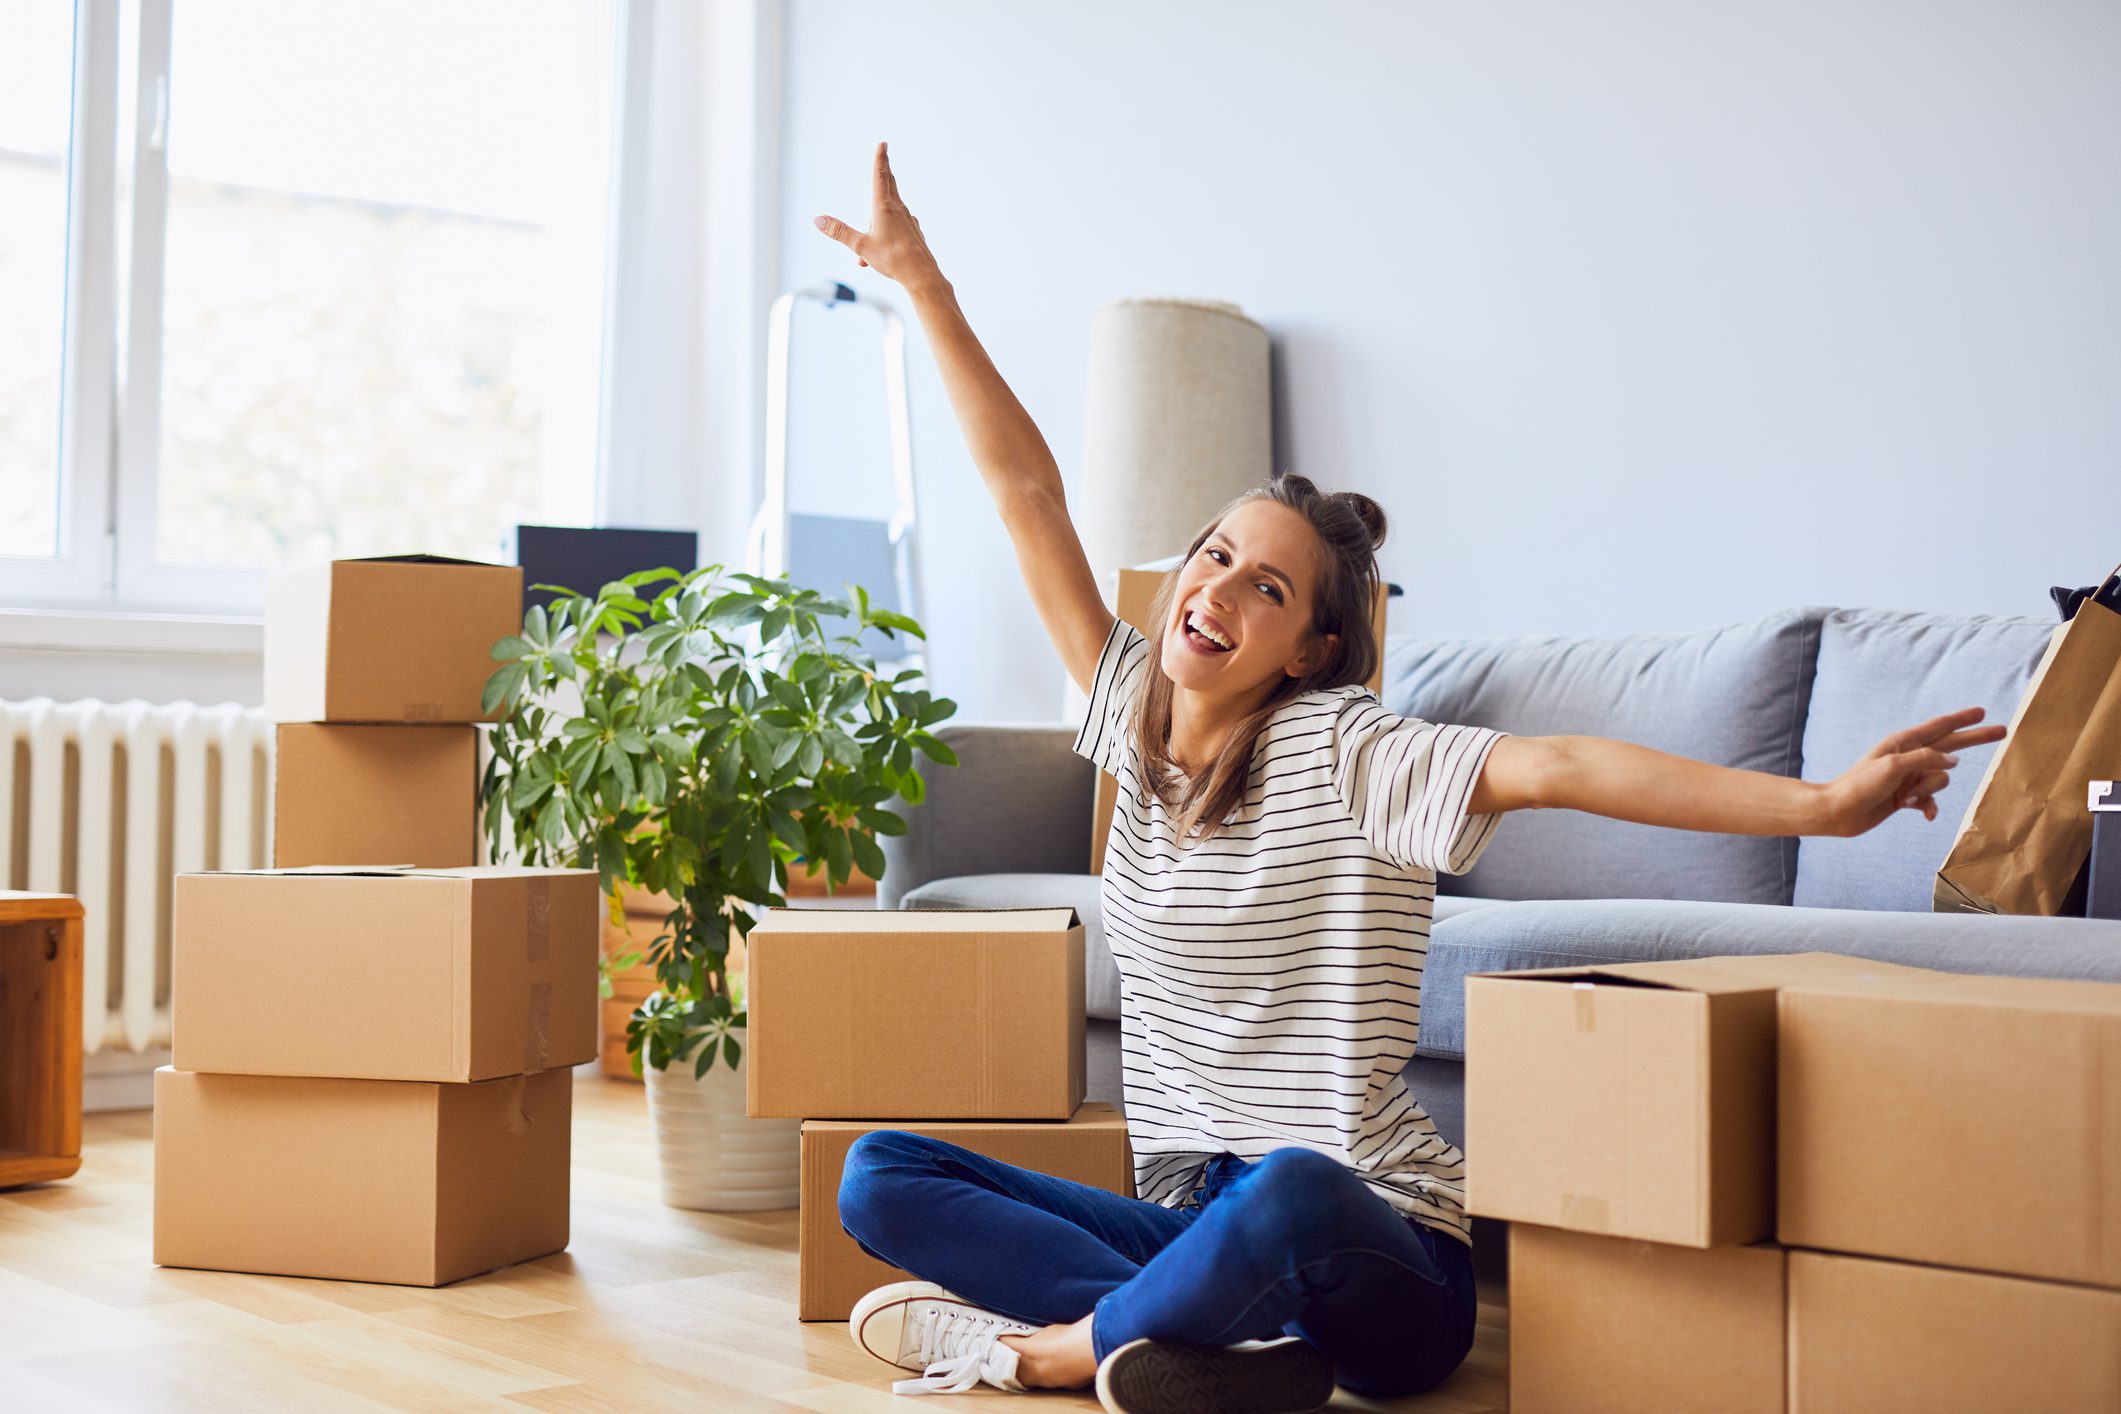 Fiatal nő a padlón ülve, magasba tartott kézzel örül az új lakásba költözésnek. Körülötte költözős dobozok.